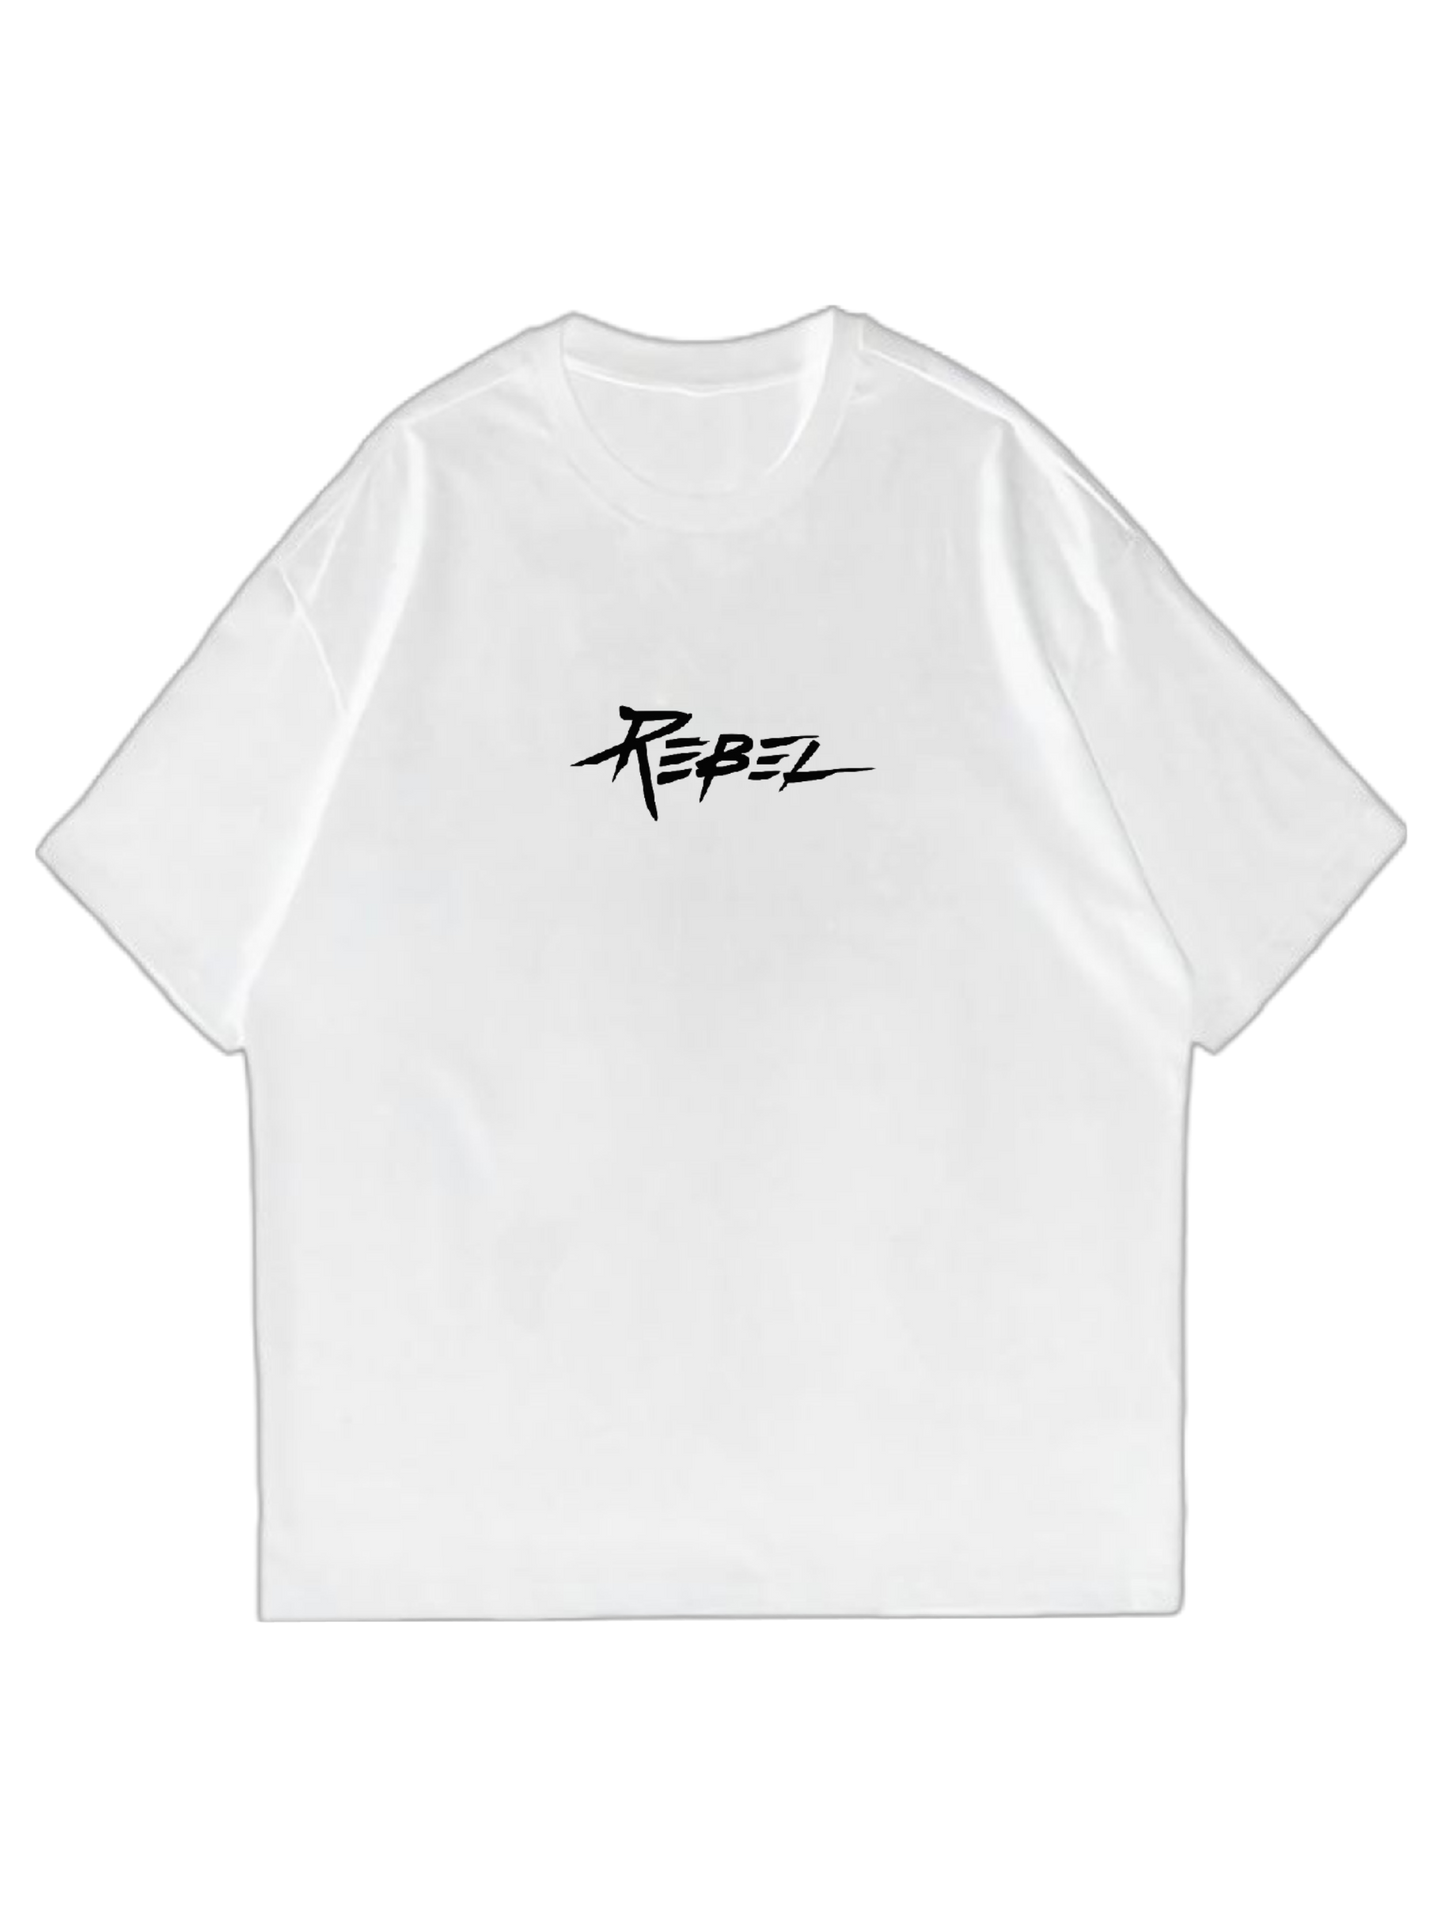 'Rebel' logo tee